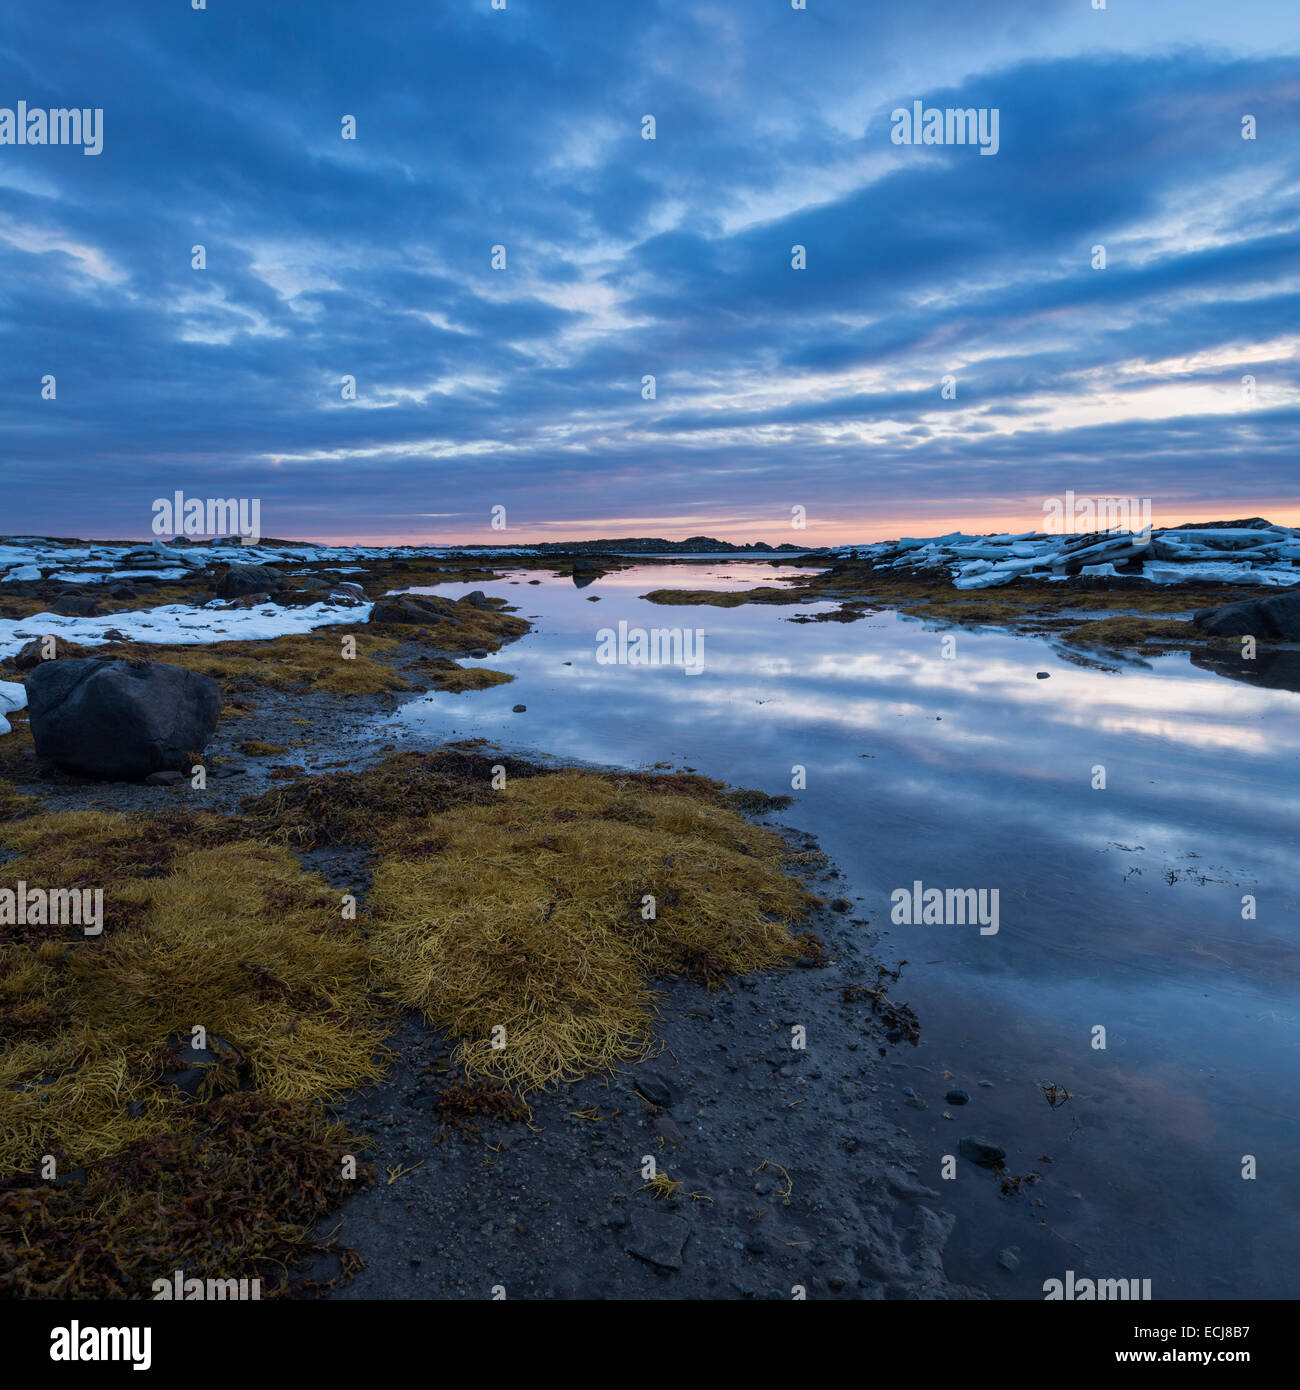 Coastal mudflats at sunset, near Nedredal, Vestvågøy, Lofoten Islands, Norway Stock Photo